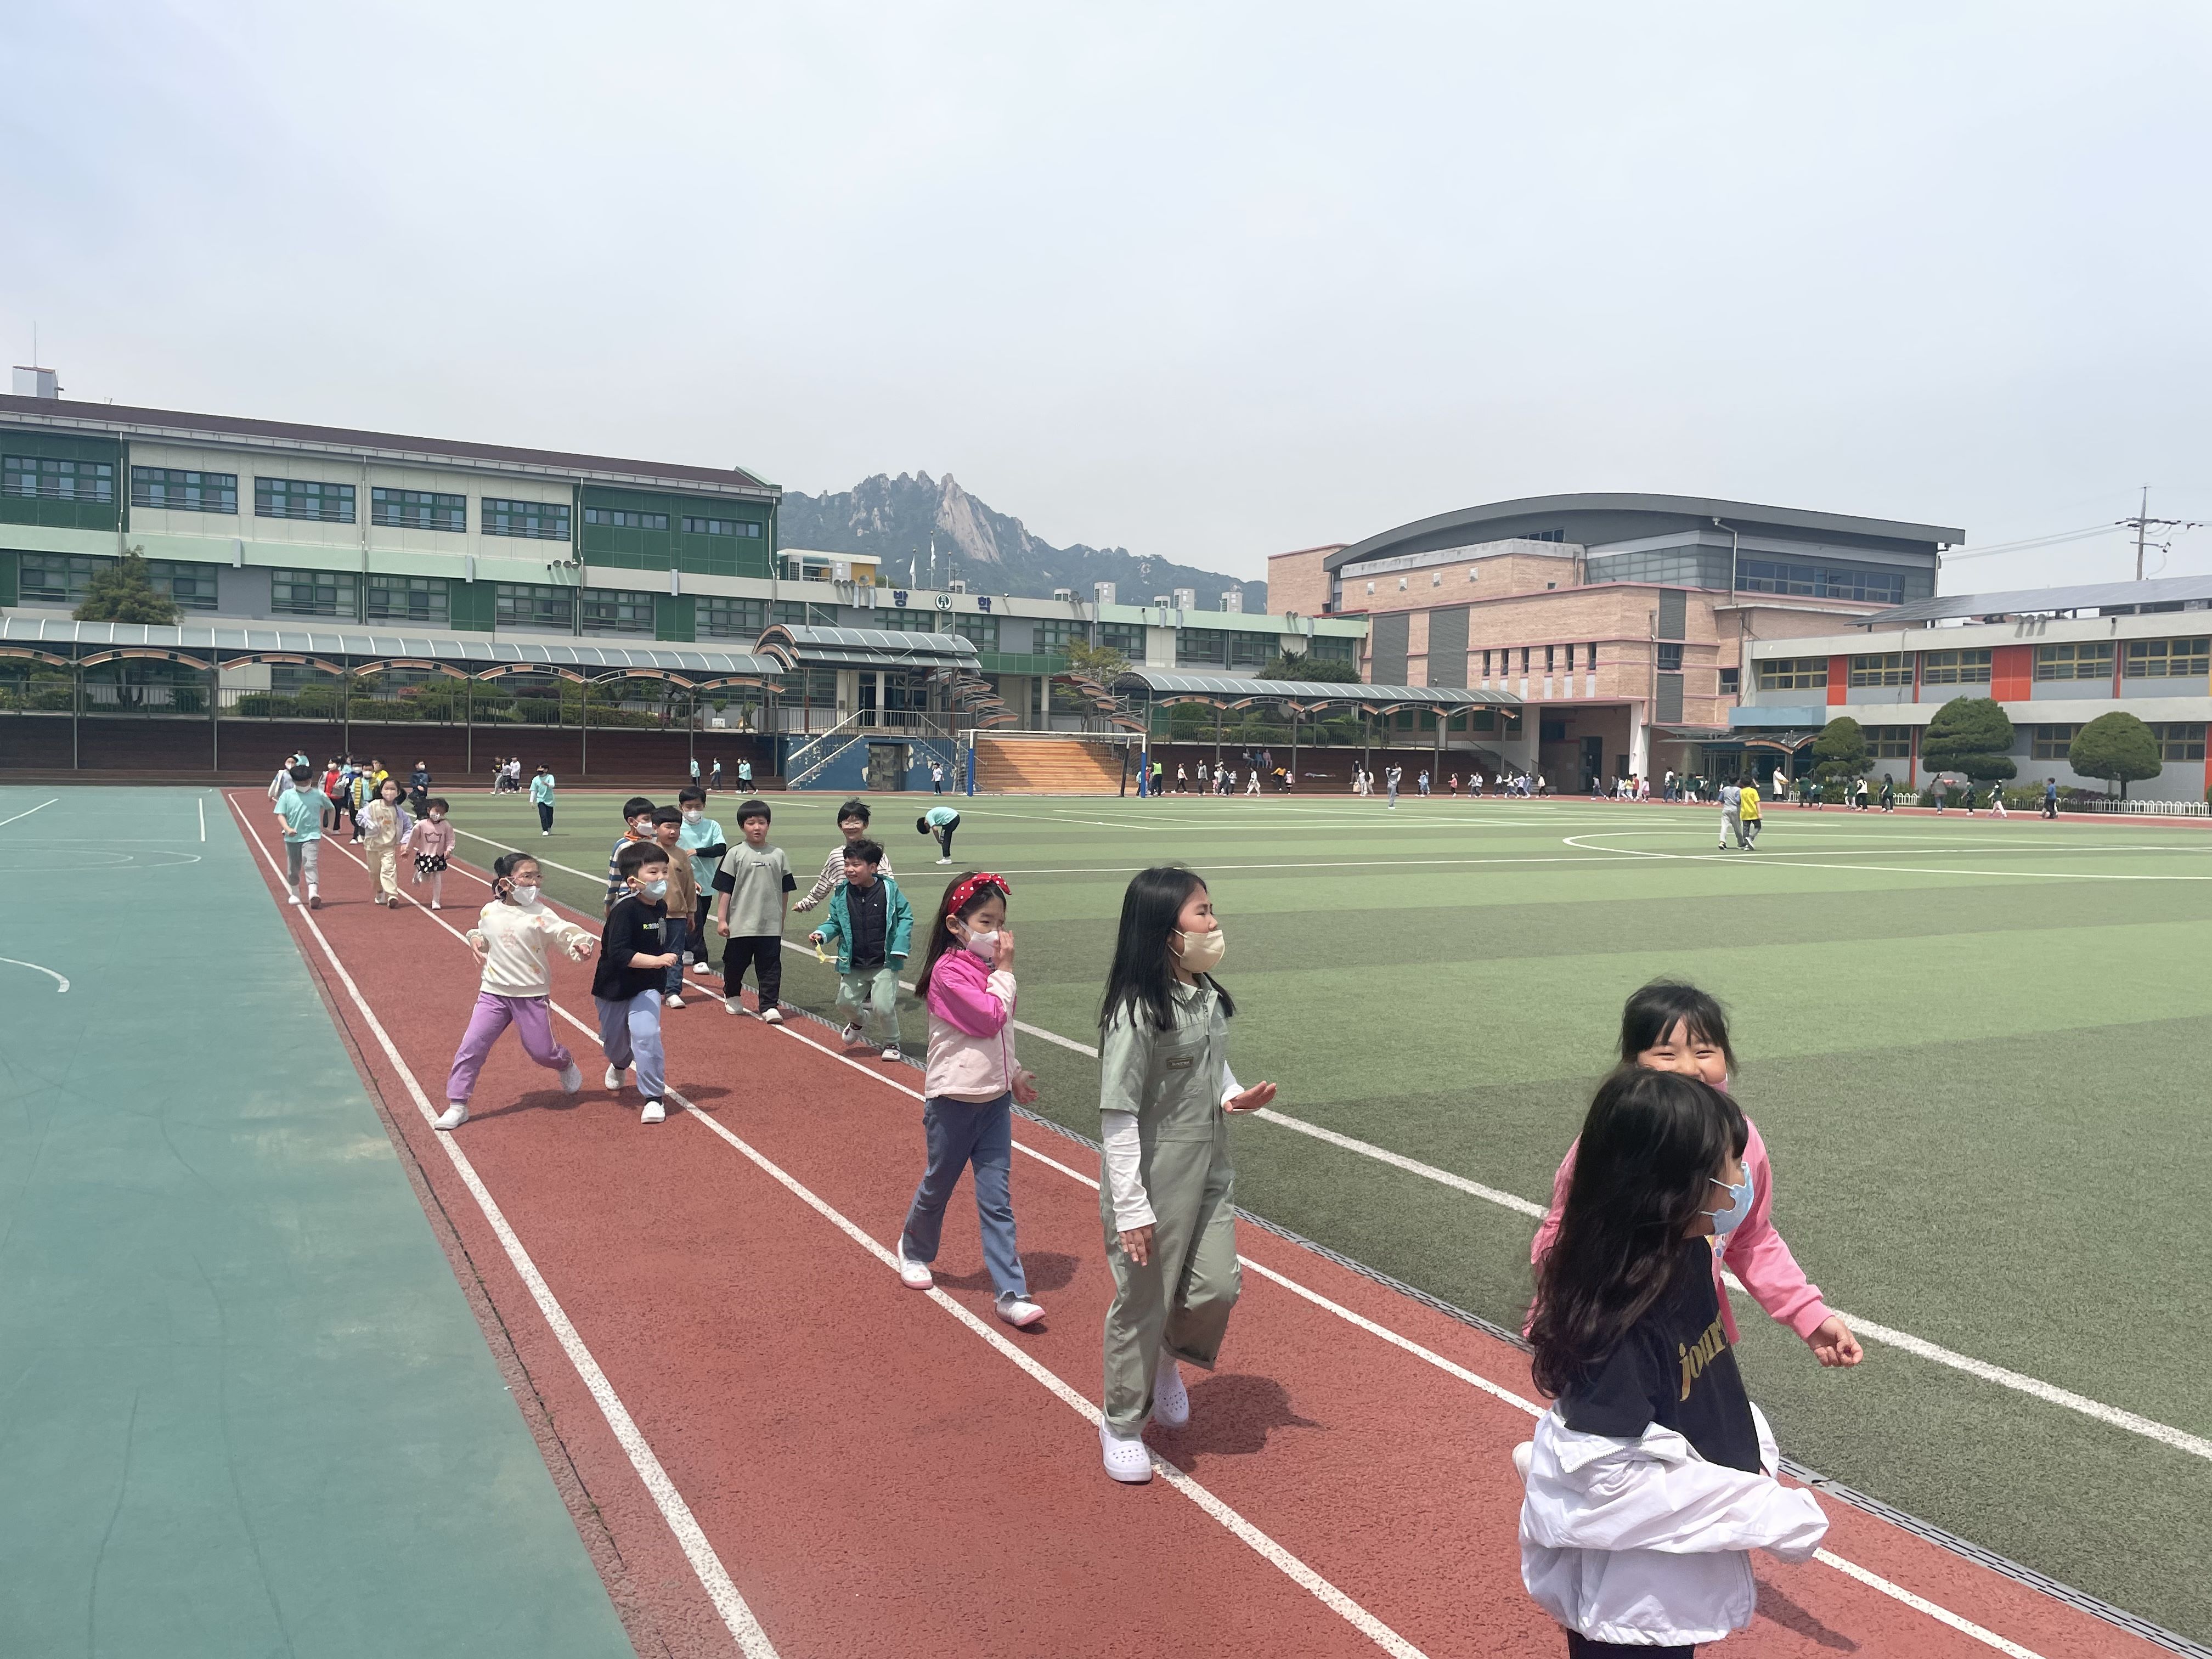 어린아이들이 운동장 트랙을 걷고 뛰며 운동하는 모습